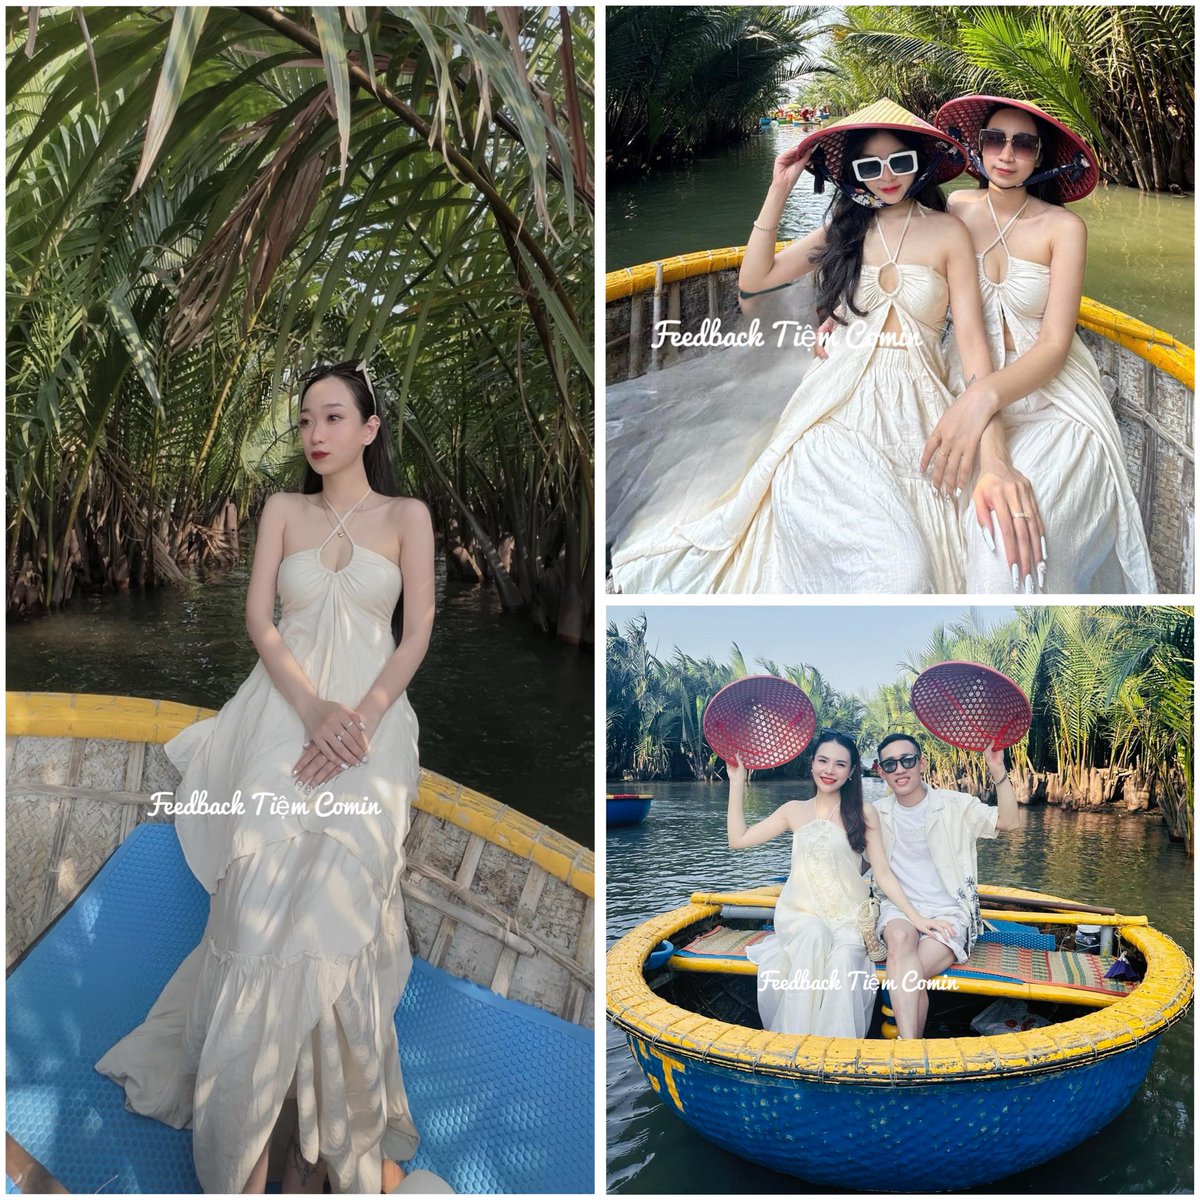 Đi Rừng Dừa 7 mẫu mặc gì xinh nhỉ? #tiemcomin #chothuevay #dulichdanang #hoian